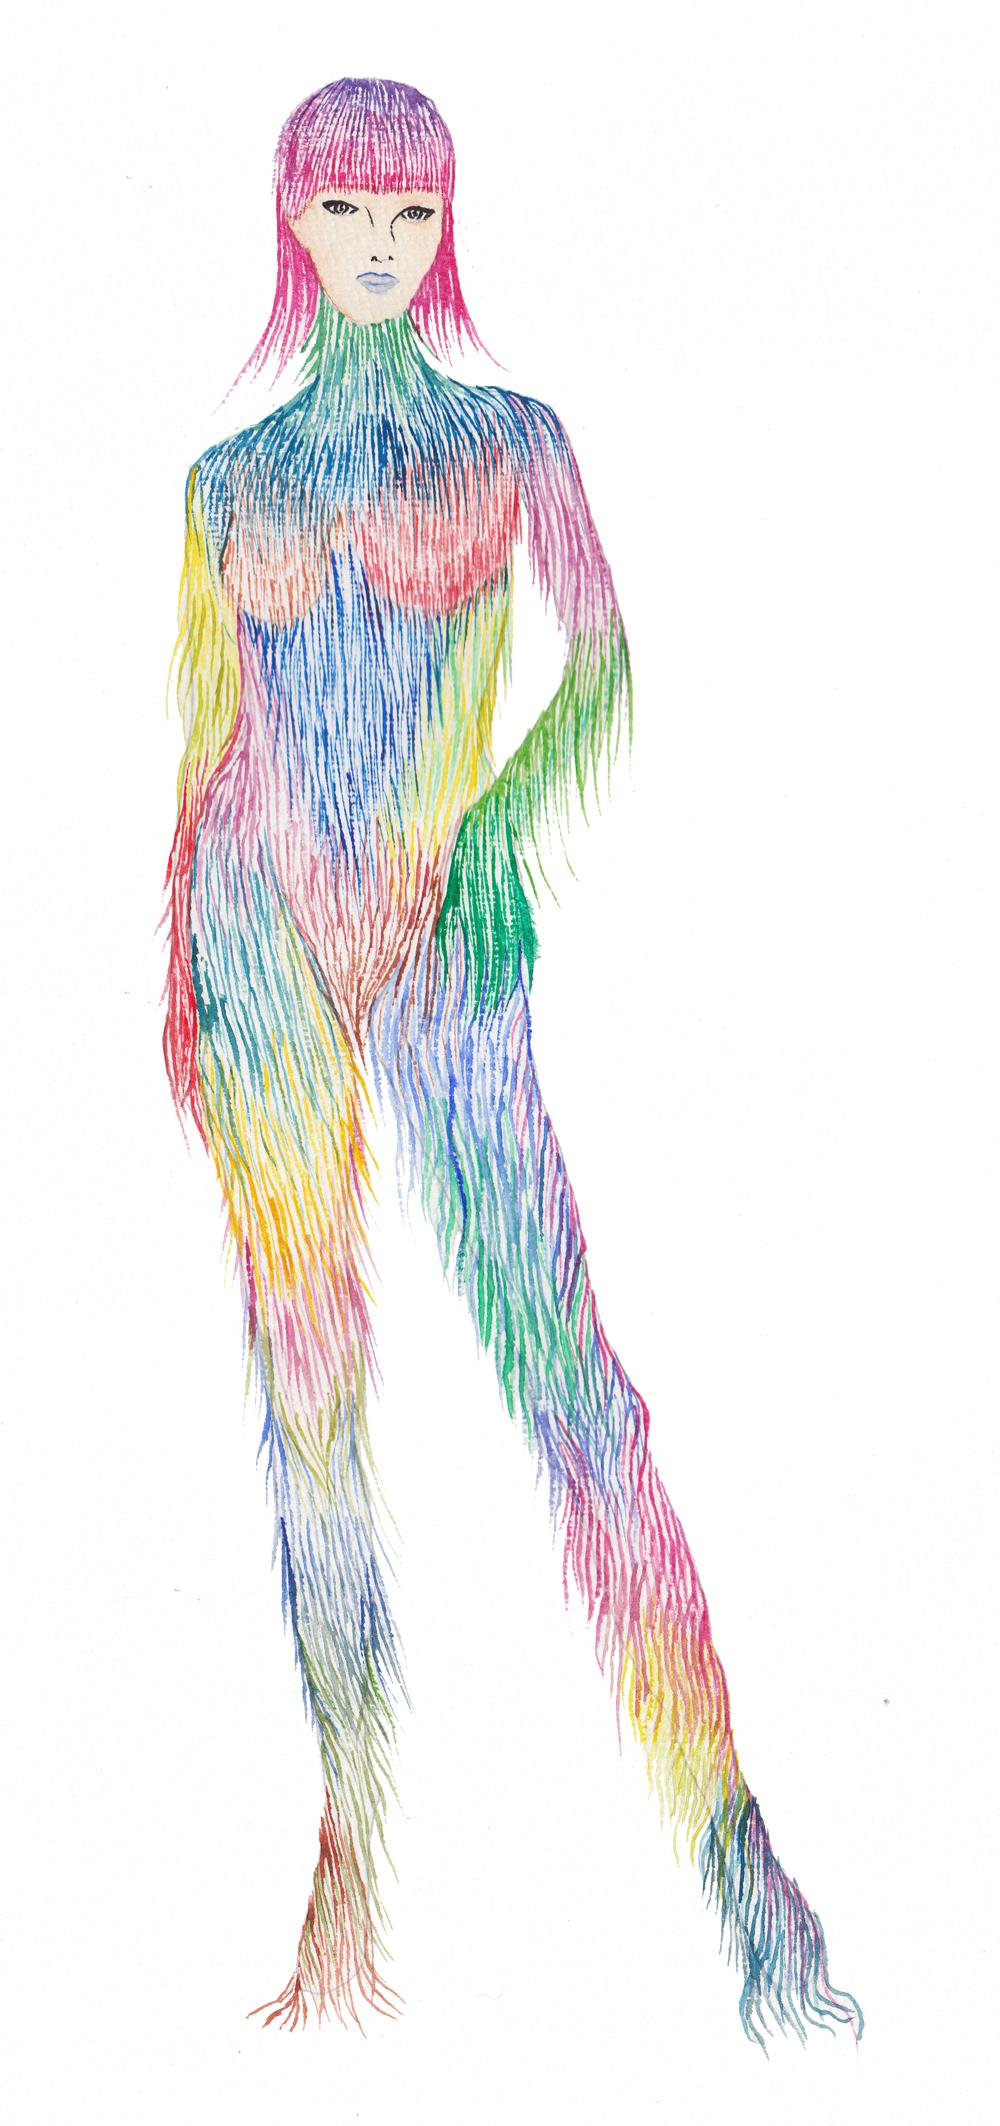 Boceto de Nueva Diosa, proyecto artistico de Barbarella Blow. Una mujer modificada genéticamente cuya piel peluda de colores adorna y abriga.